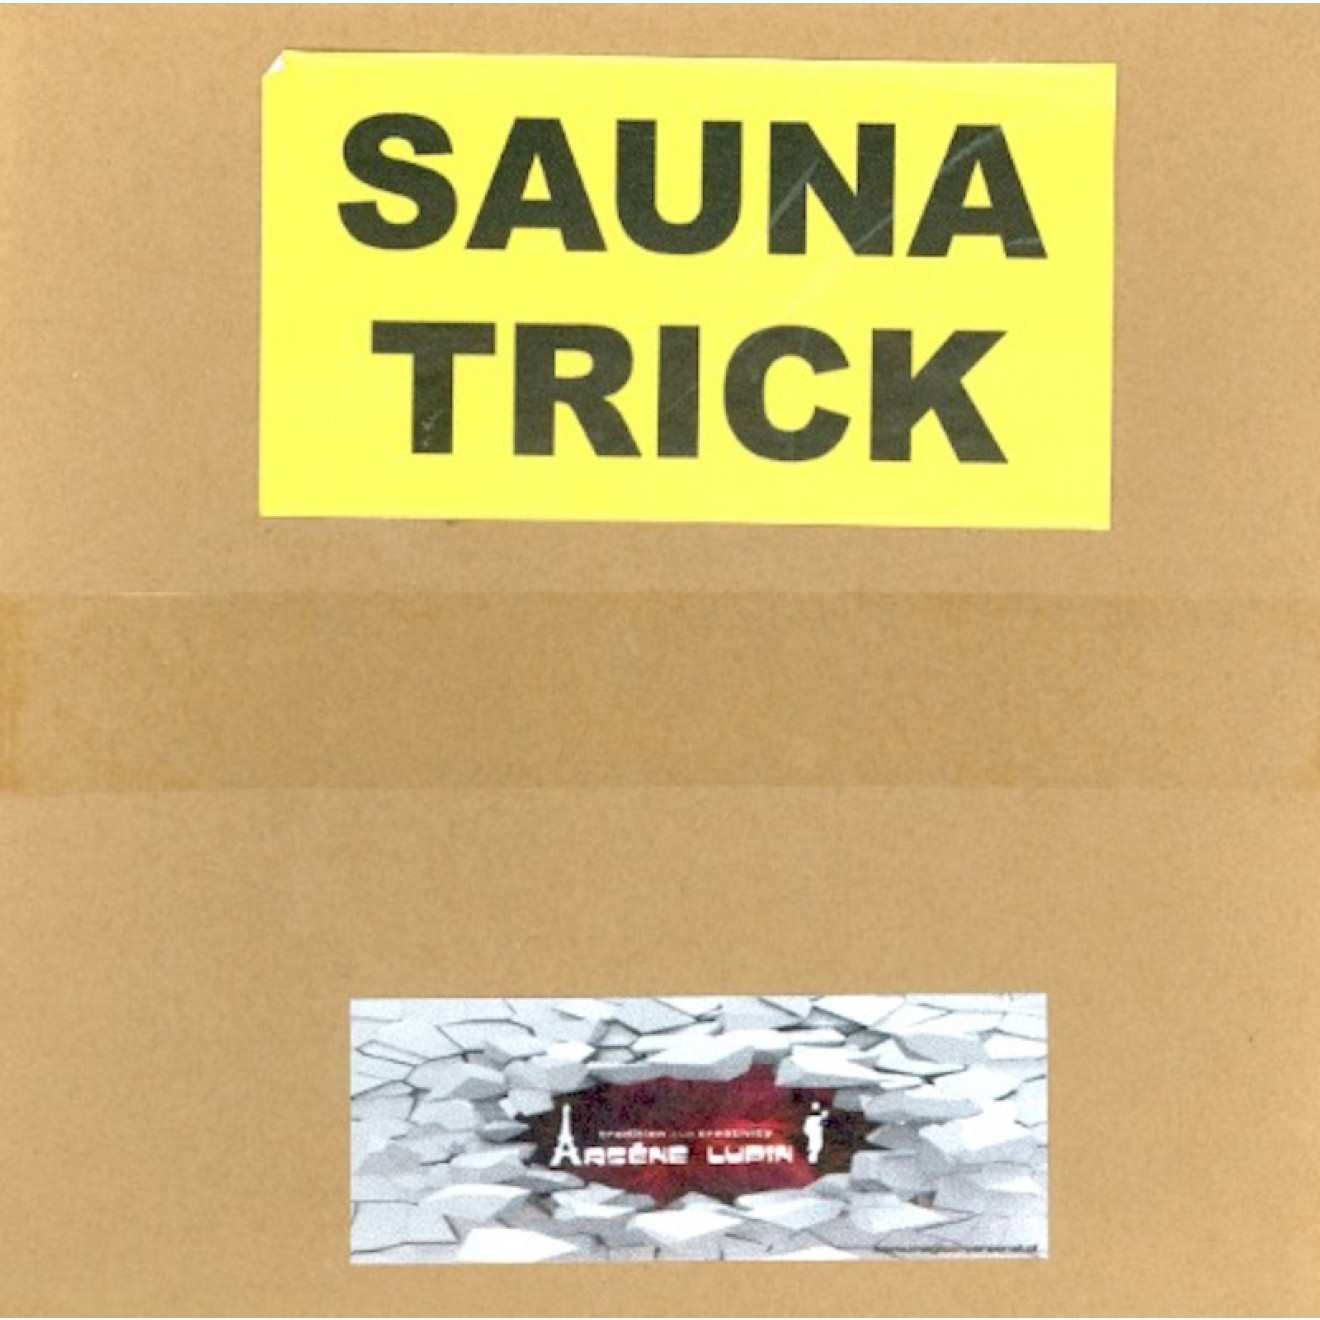 Sauna Trick (Arsene Lupin)